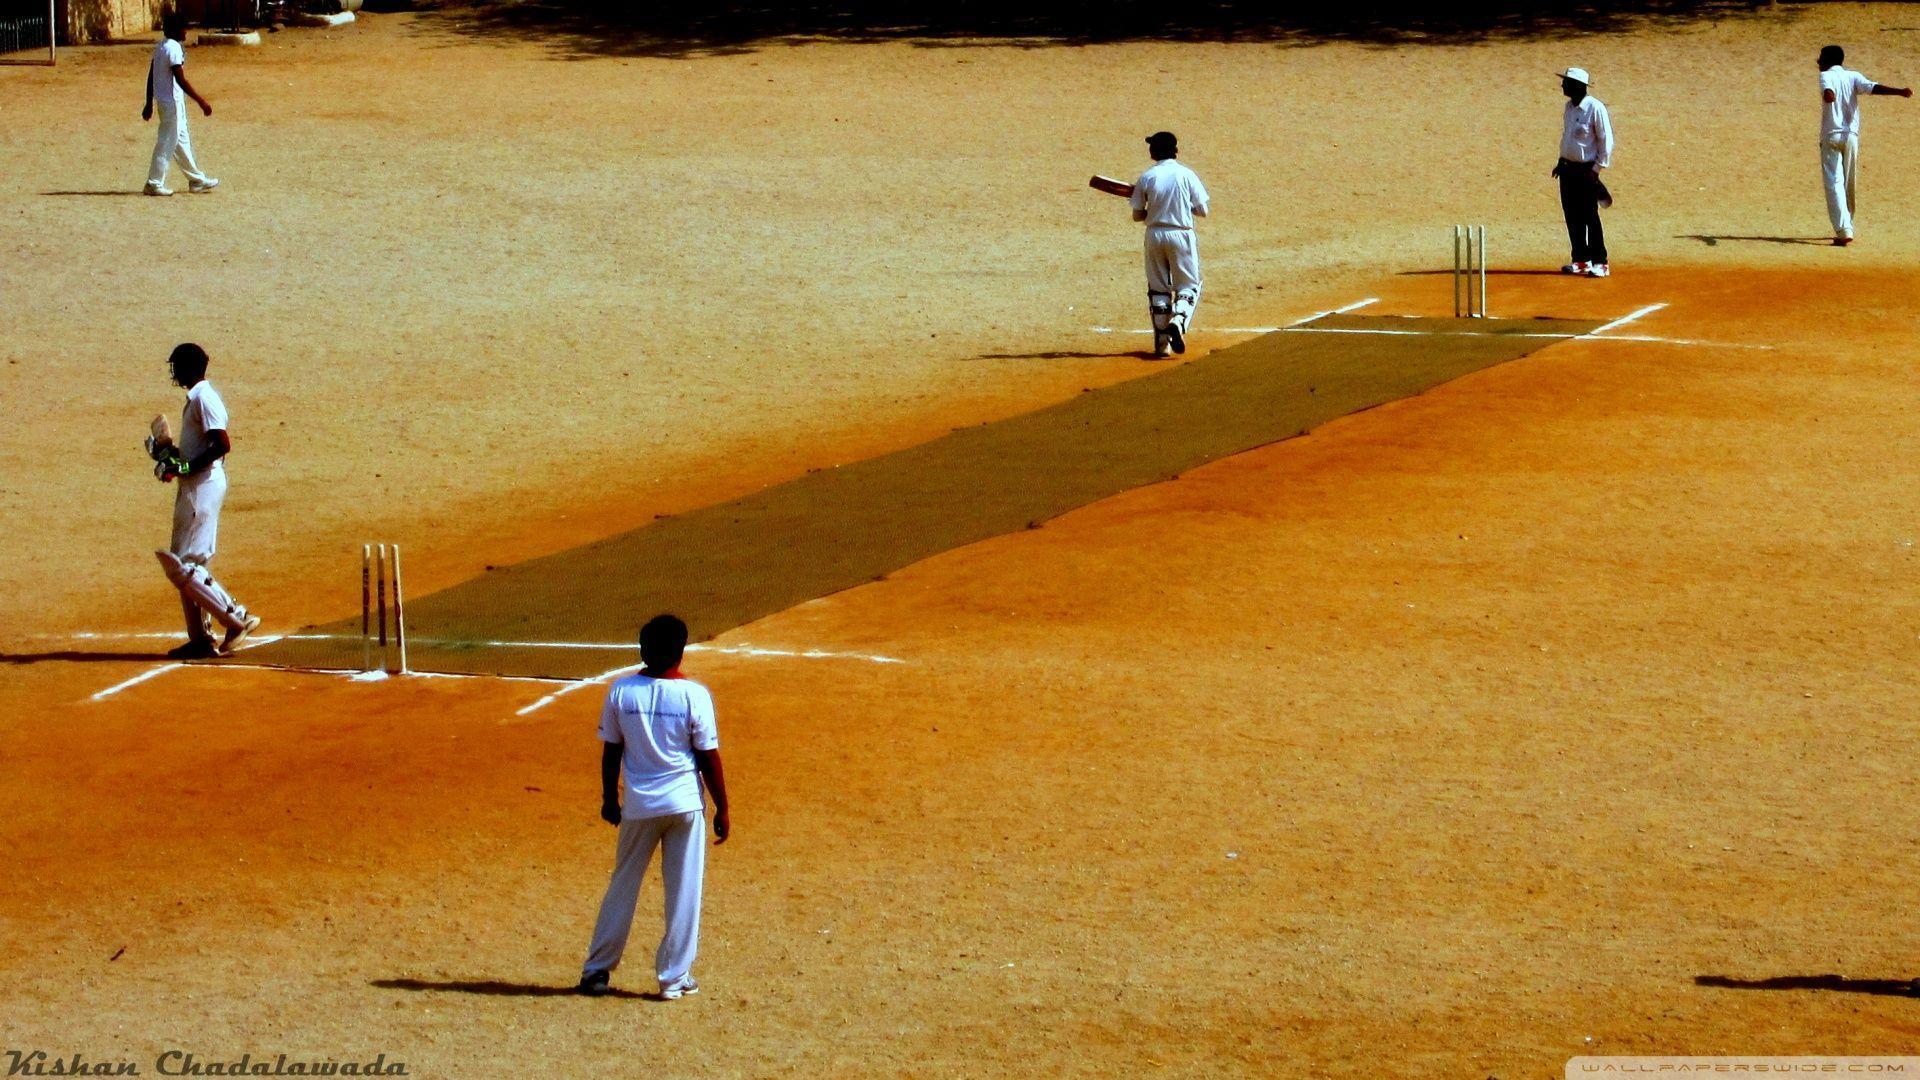 Cricket. HD desktop wallpaper, High Definition